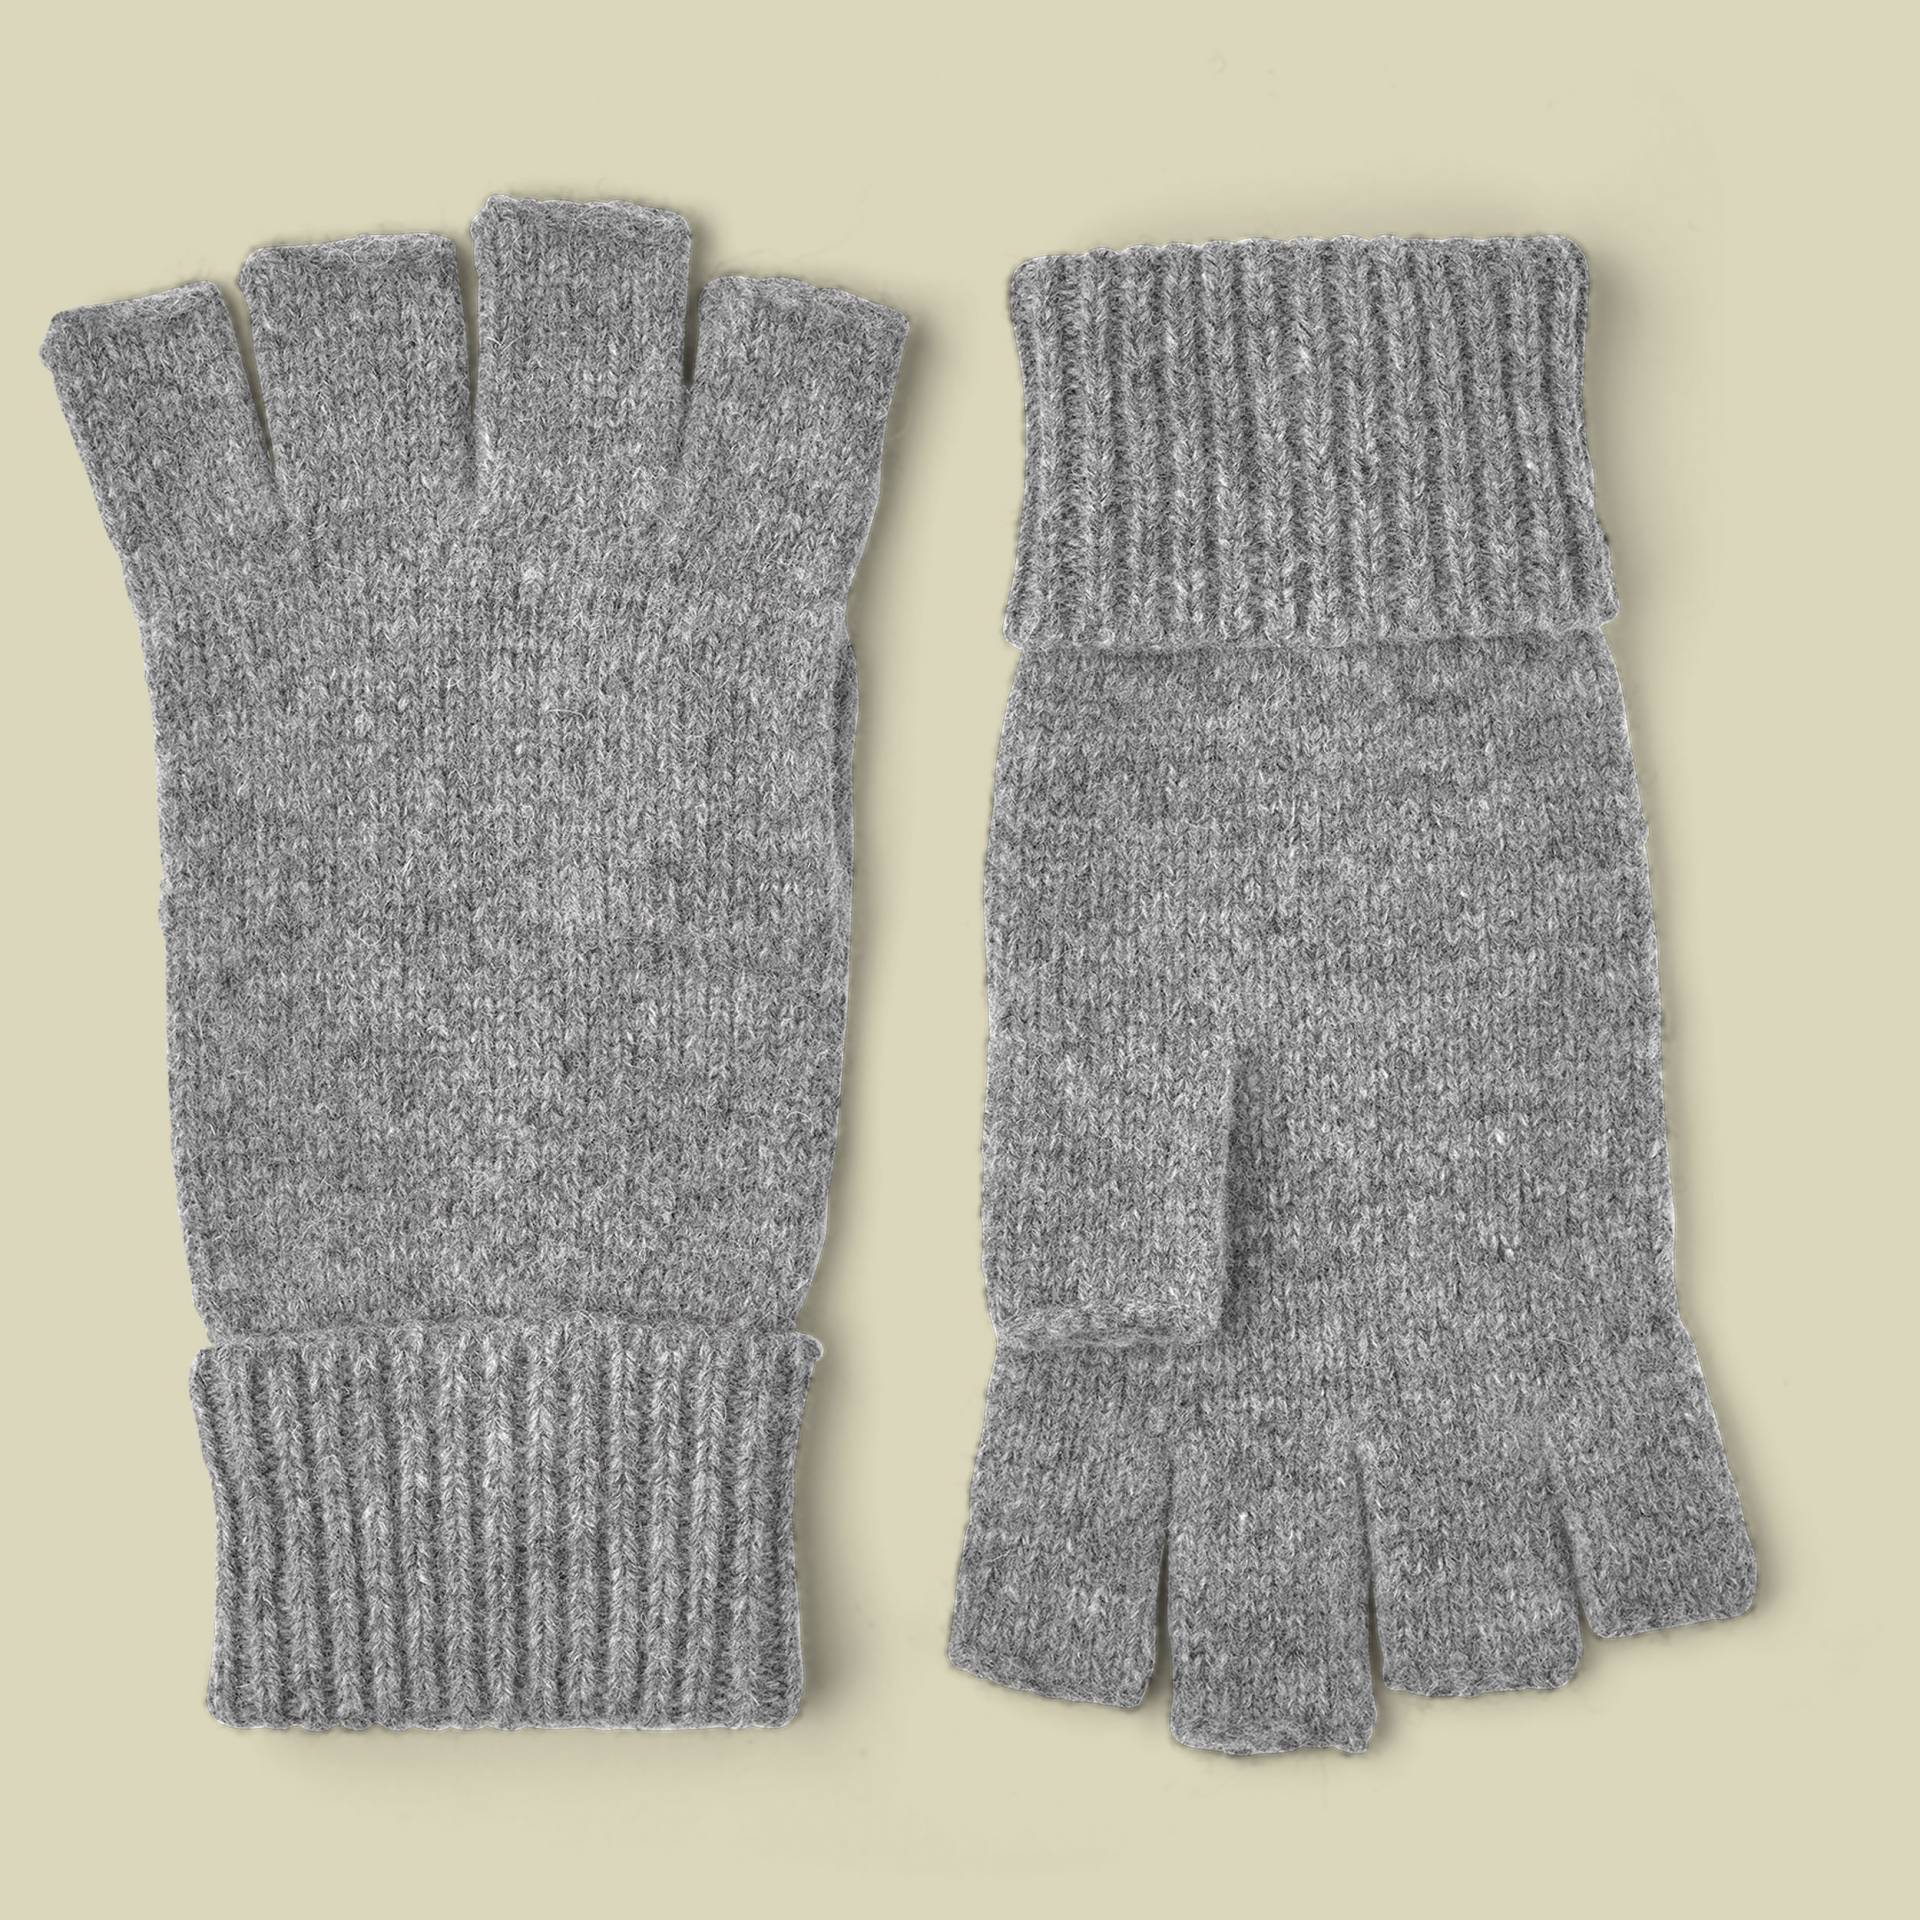 Basic Wool Half Finger Größe 6 Farbe grey von Hestra